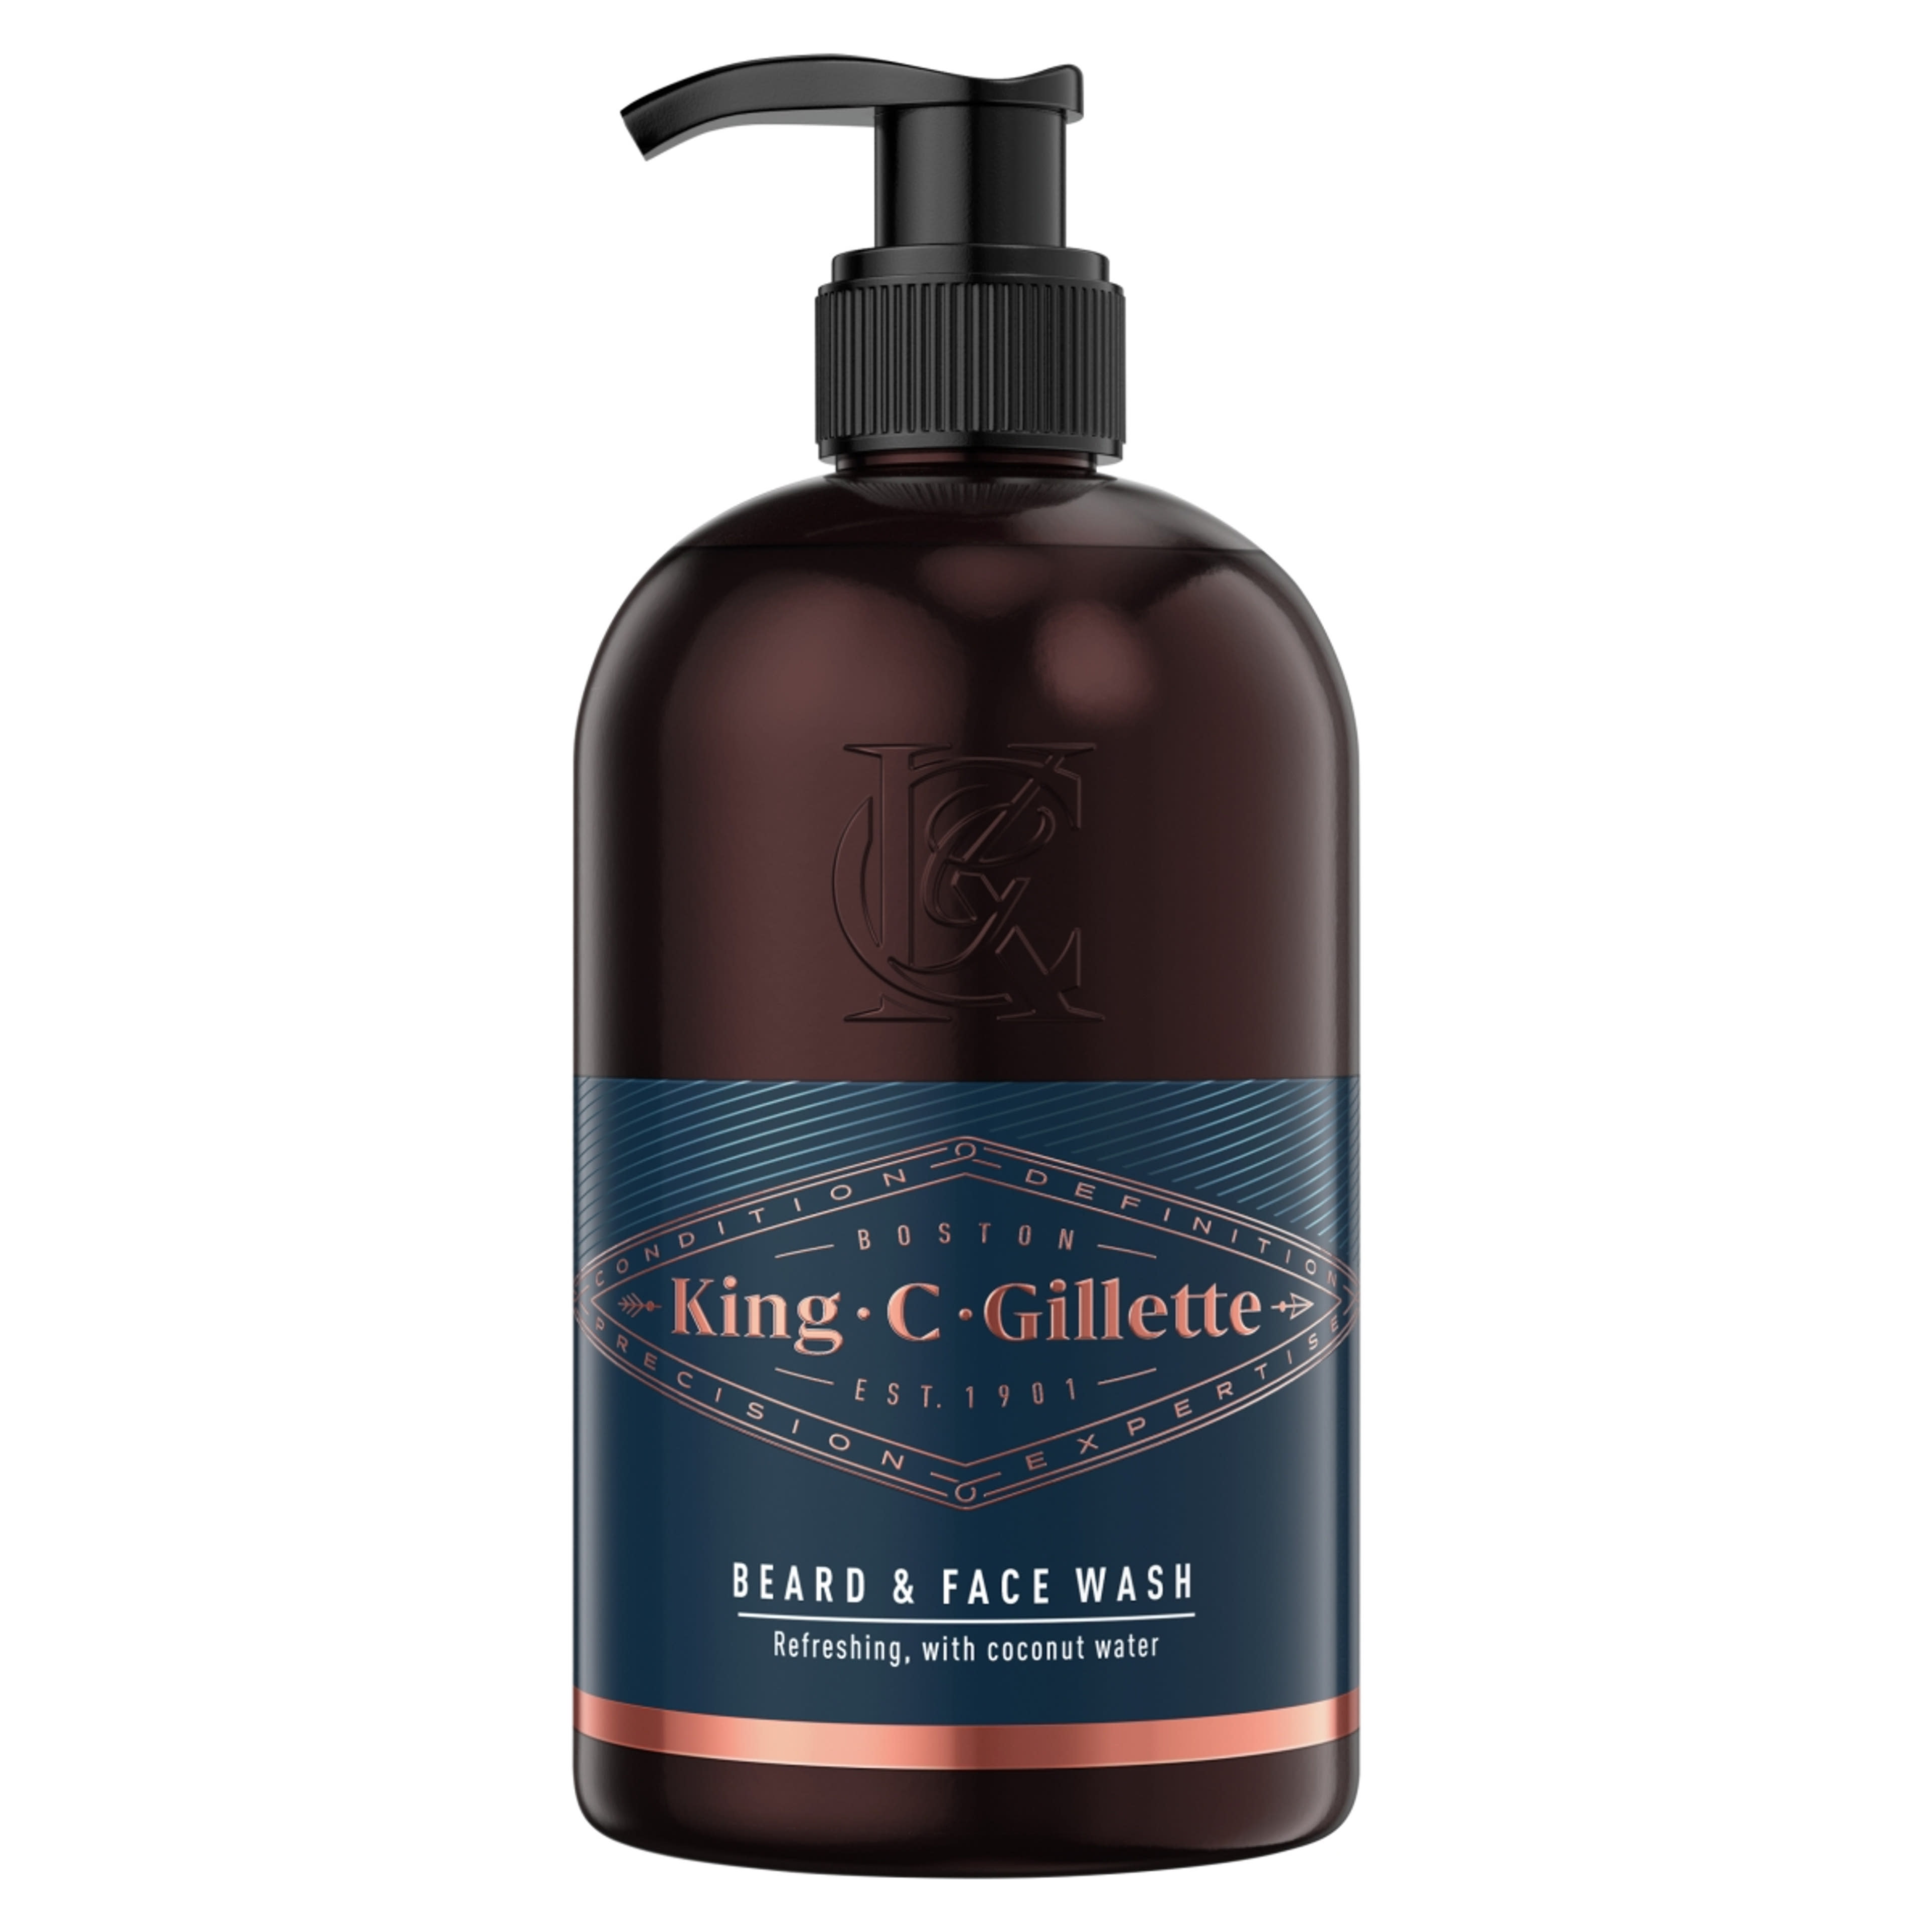 Gillette King C. szakáll&arcmosó - 350 ml